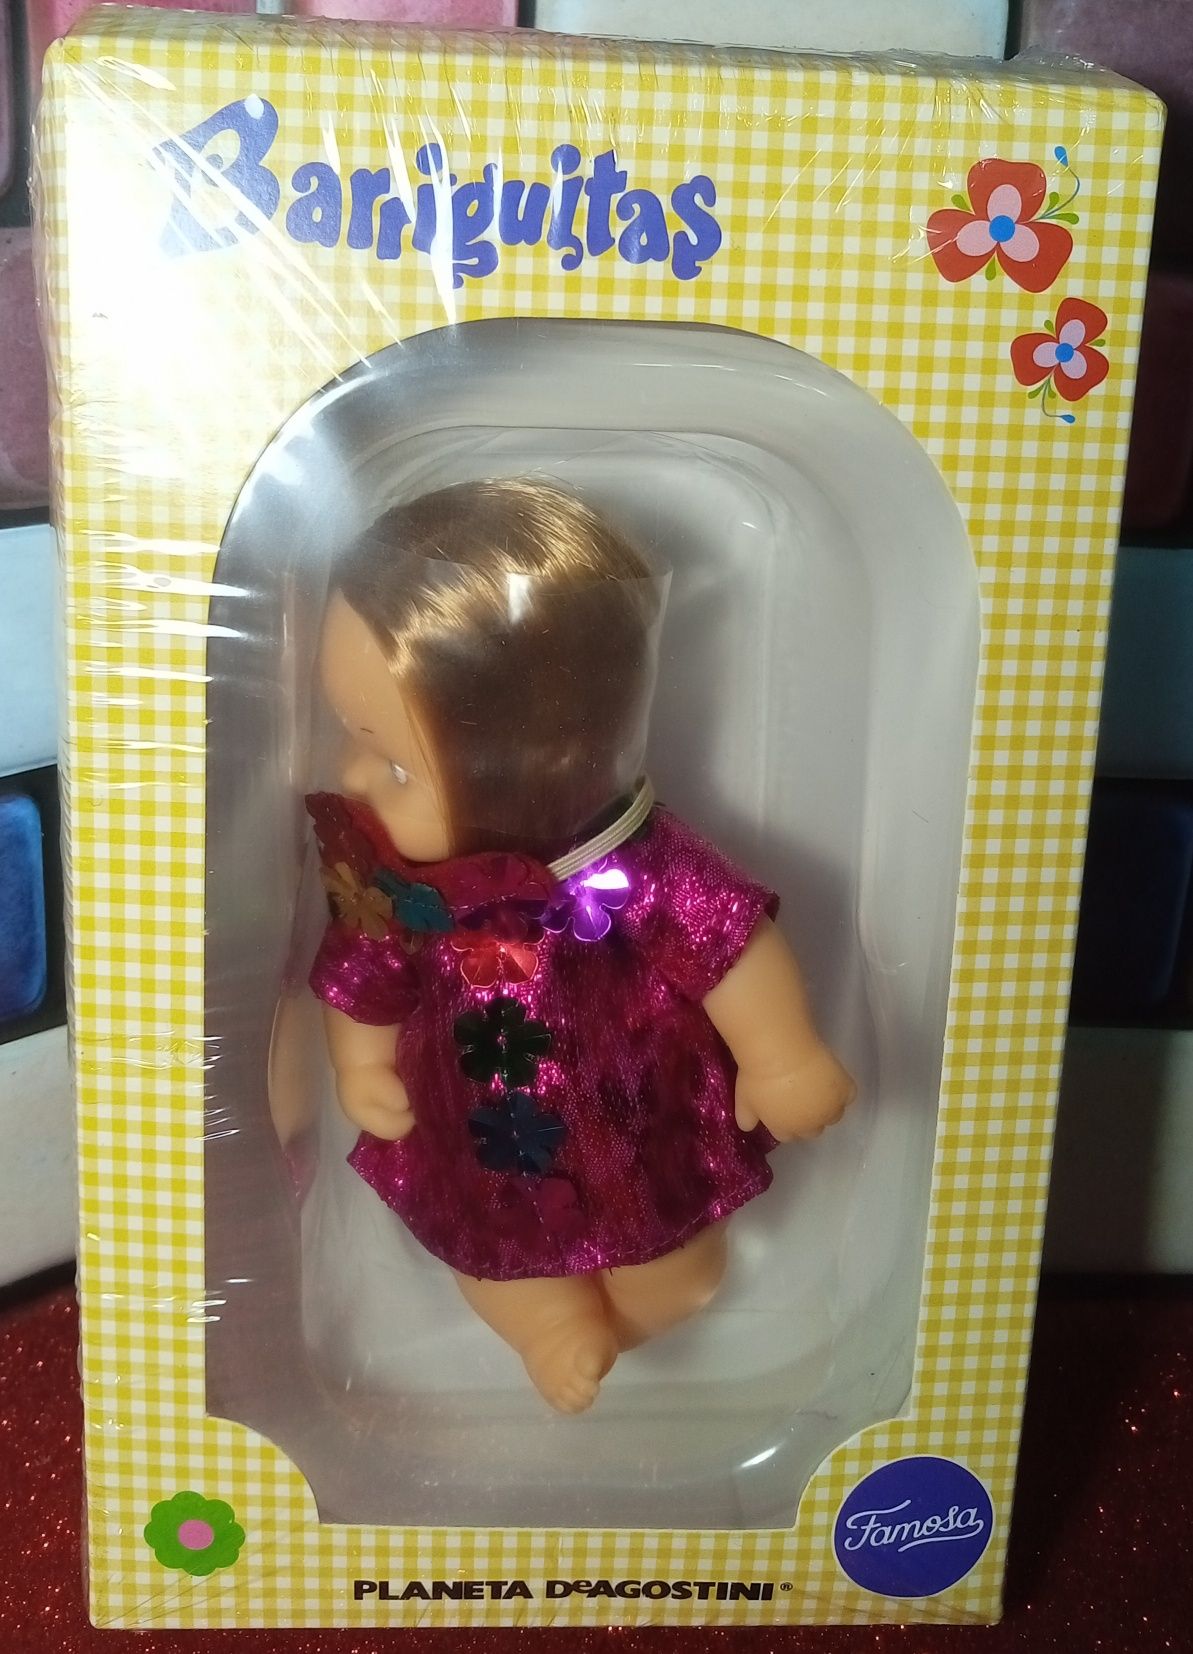 Barbie STYLE - 2013 e Barriguitas da Coleção do Mundo